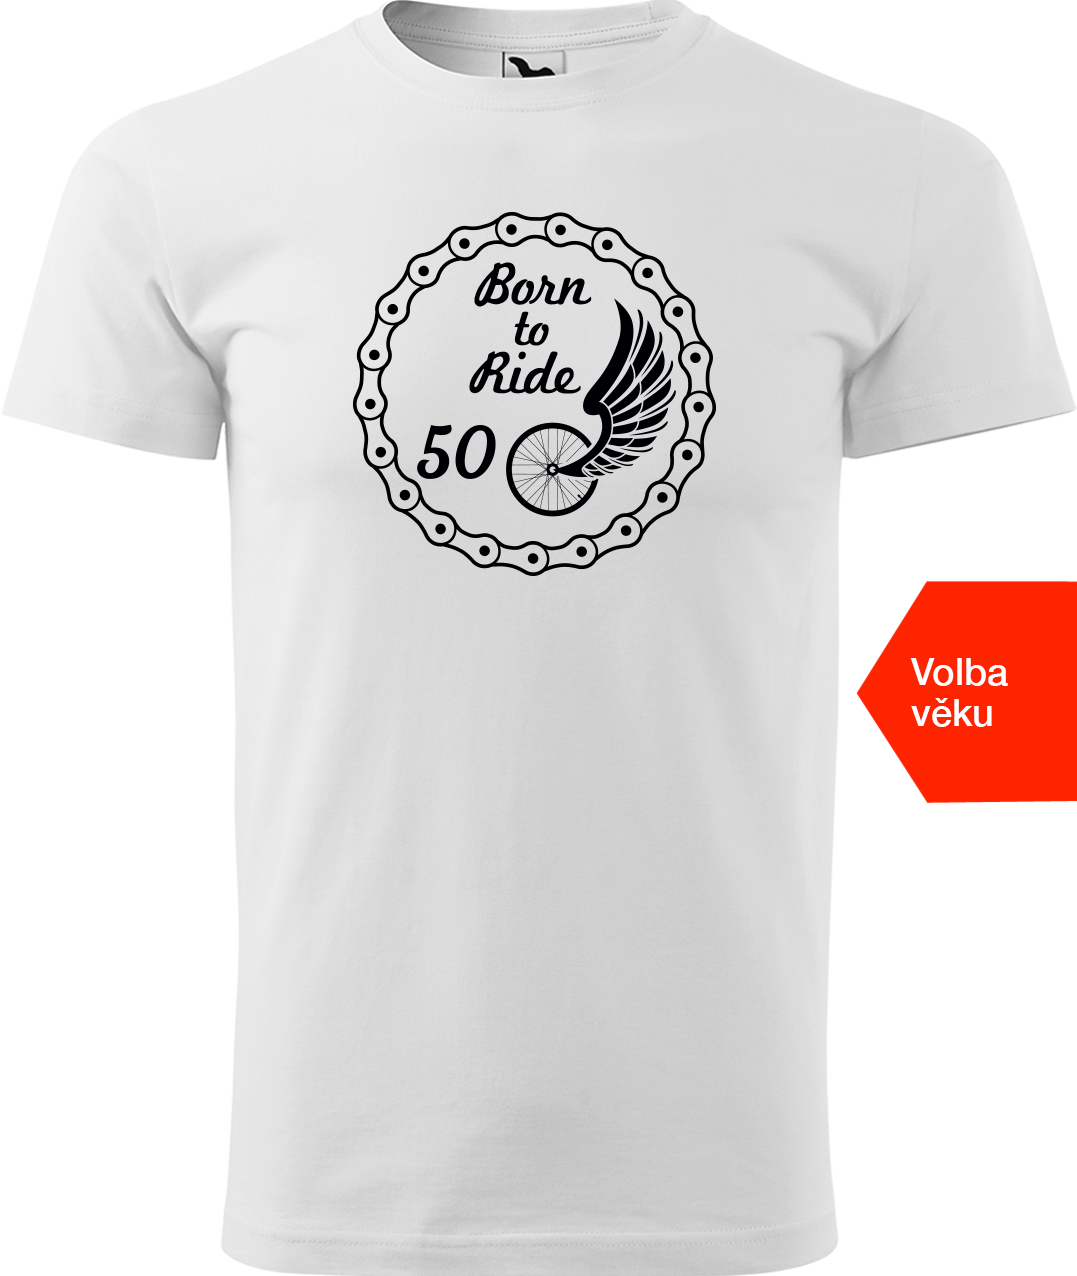 Pánské tričko pro cyklistu s věkem - Born to Ride (wings) Velikost: 2XL, Barva: Bílá (00)